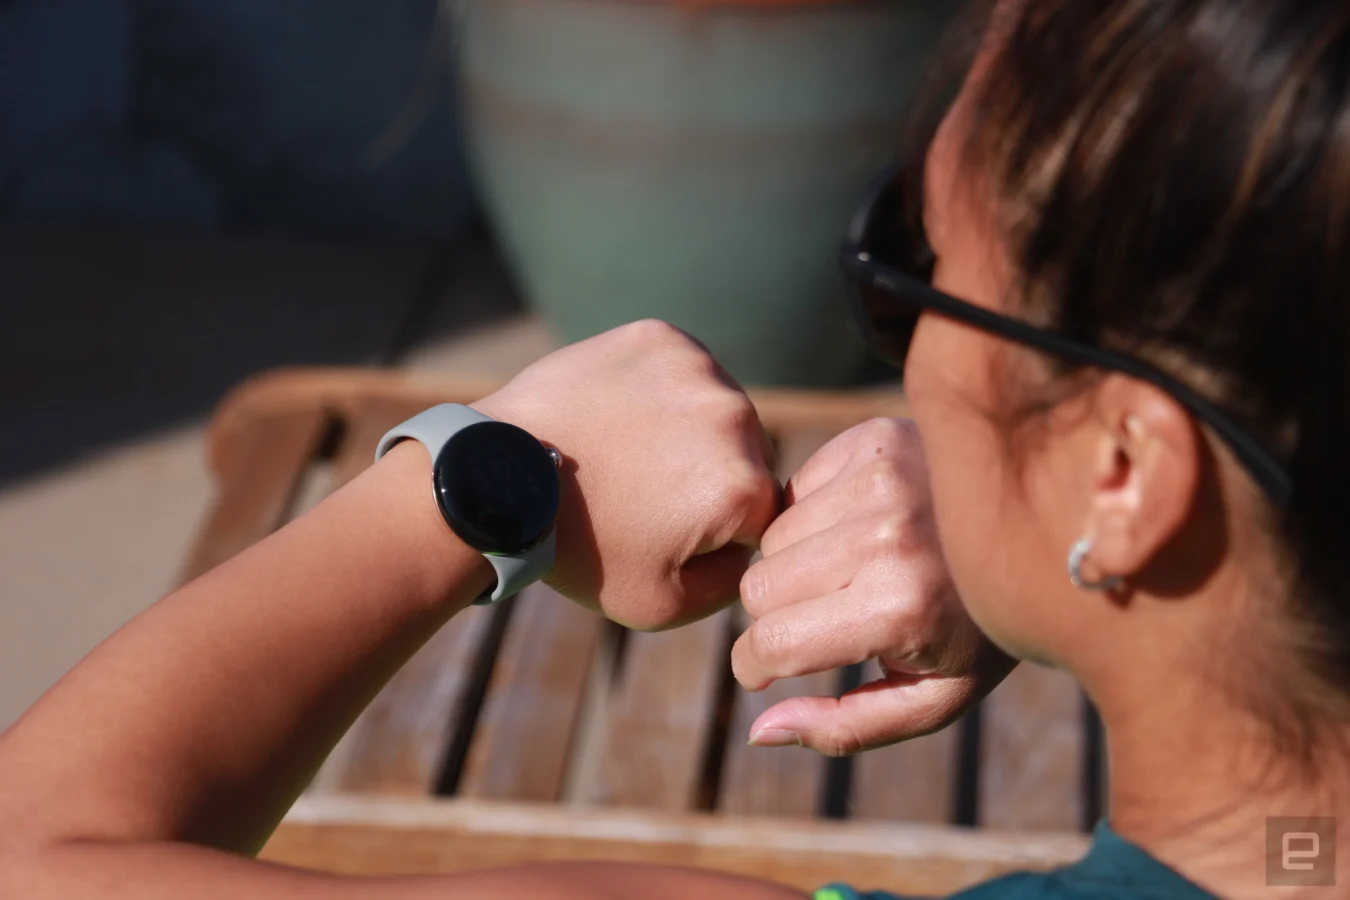 Die Pixel Watch am Handgelenk einer Person, aber ihr Gesicht ist ausgeschaltet.